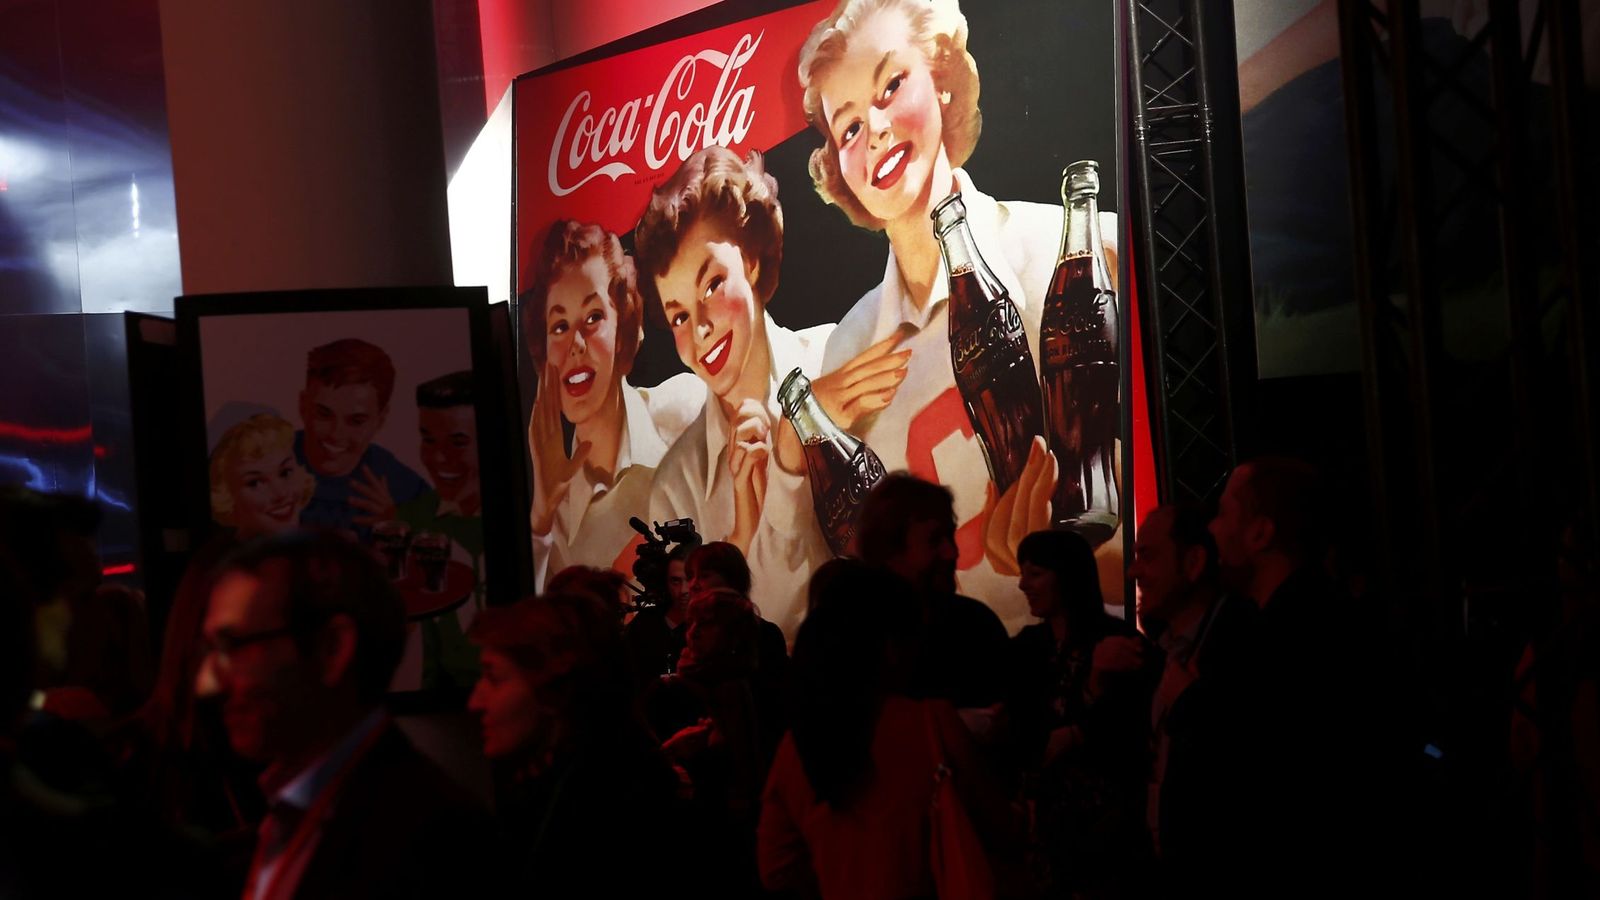 Foto: Presentación de Coca-Cola con el logo al fondo.